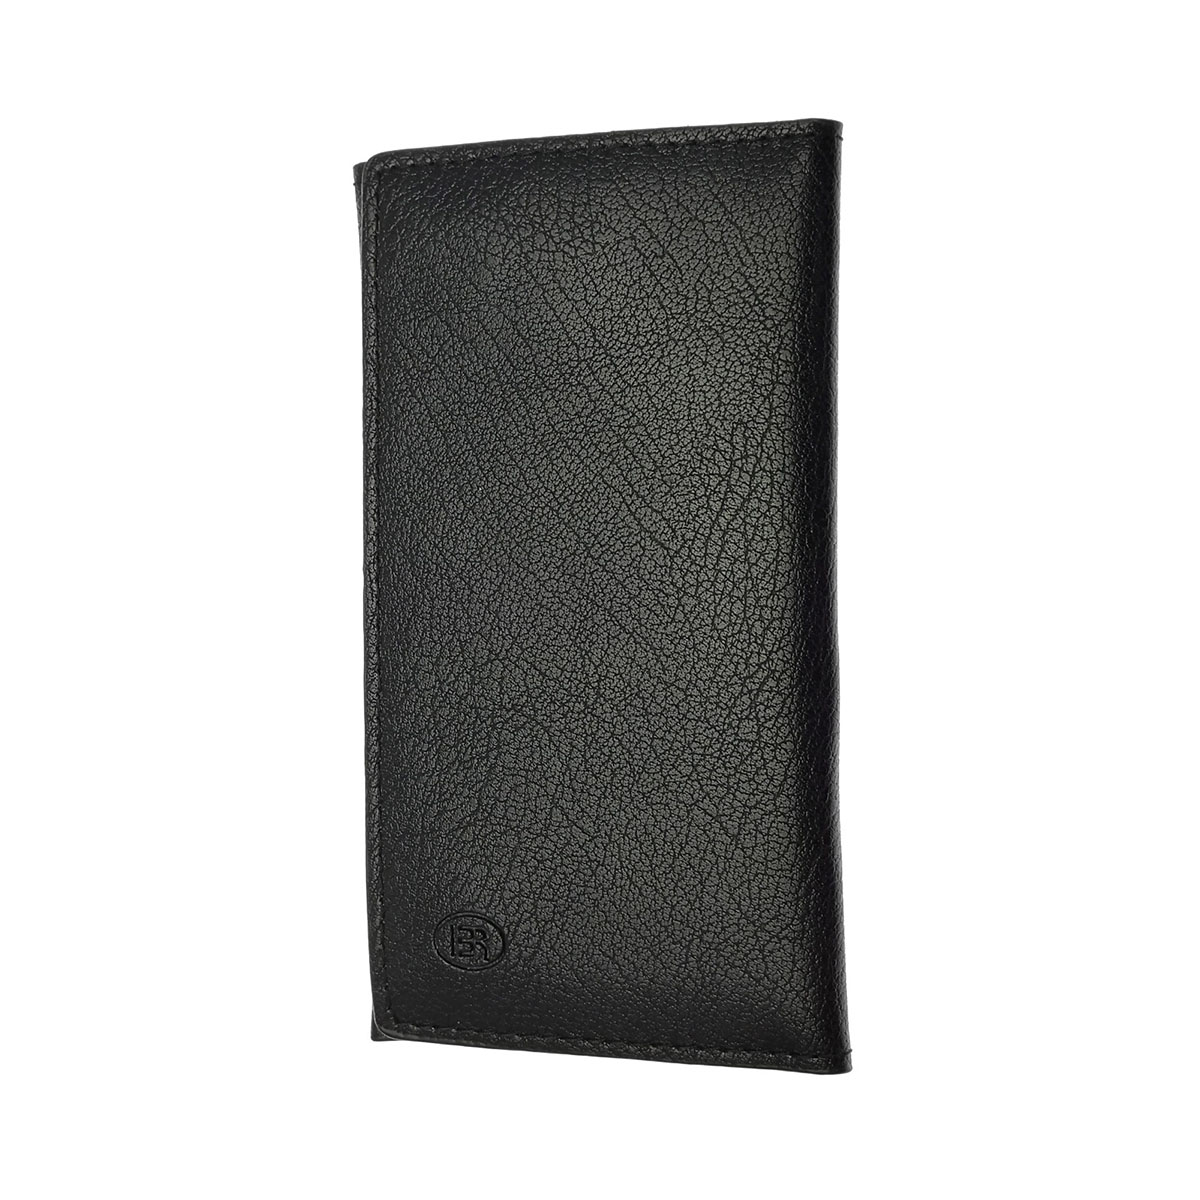 Чехол кошелек универсальный для смартфонов размером 4.0, экокожа, визитница, цвет черный.